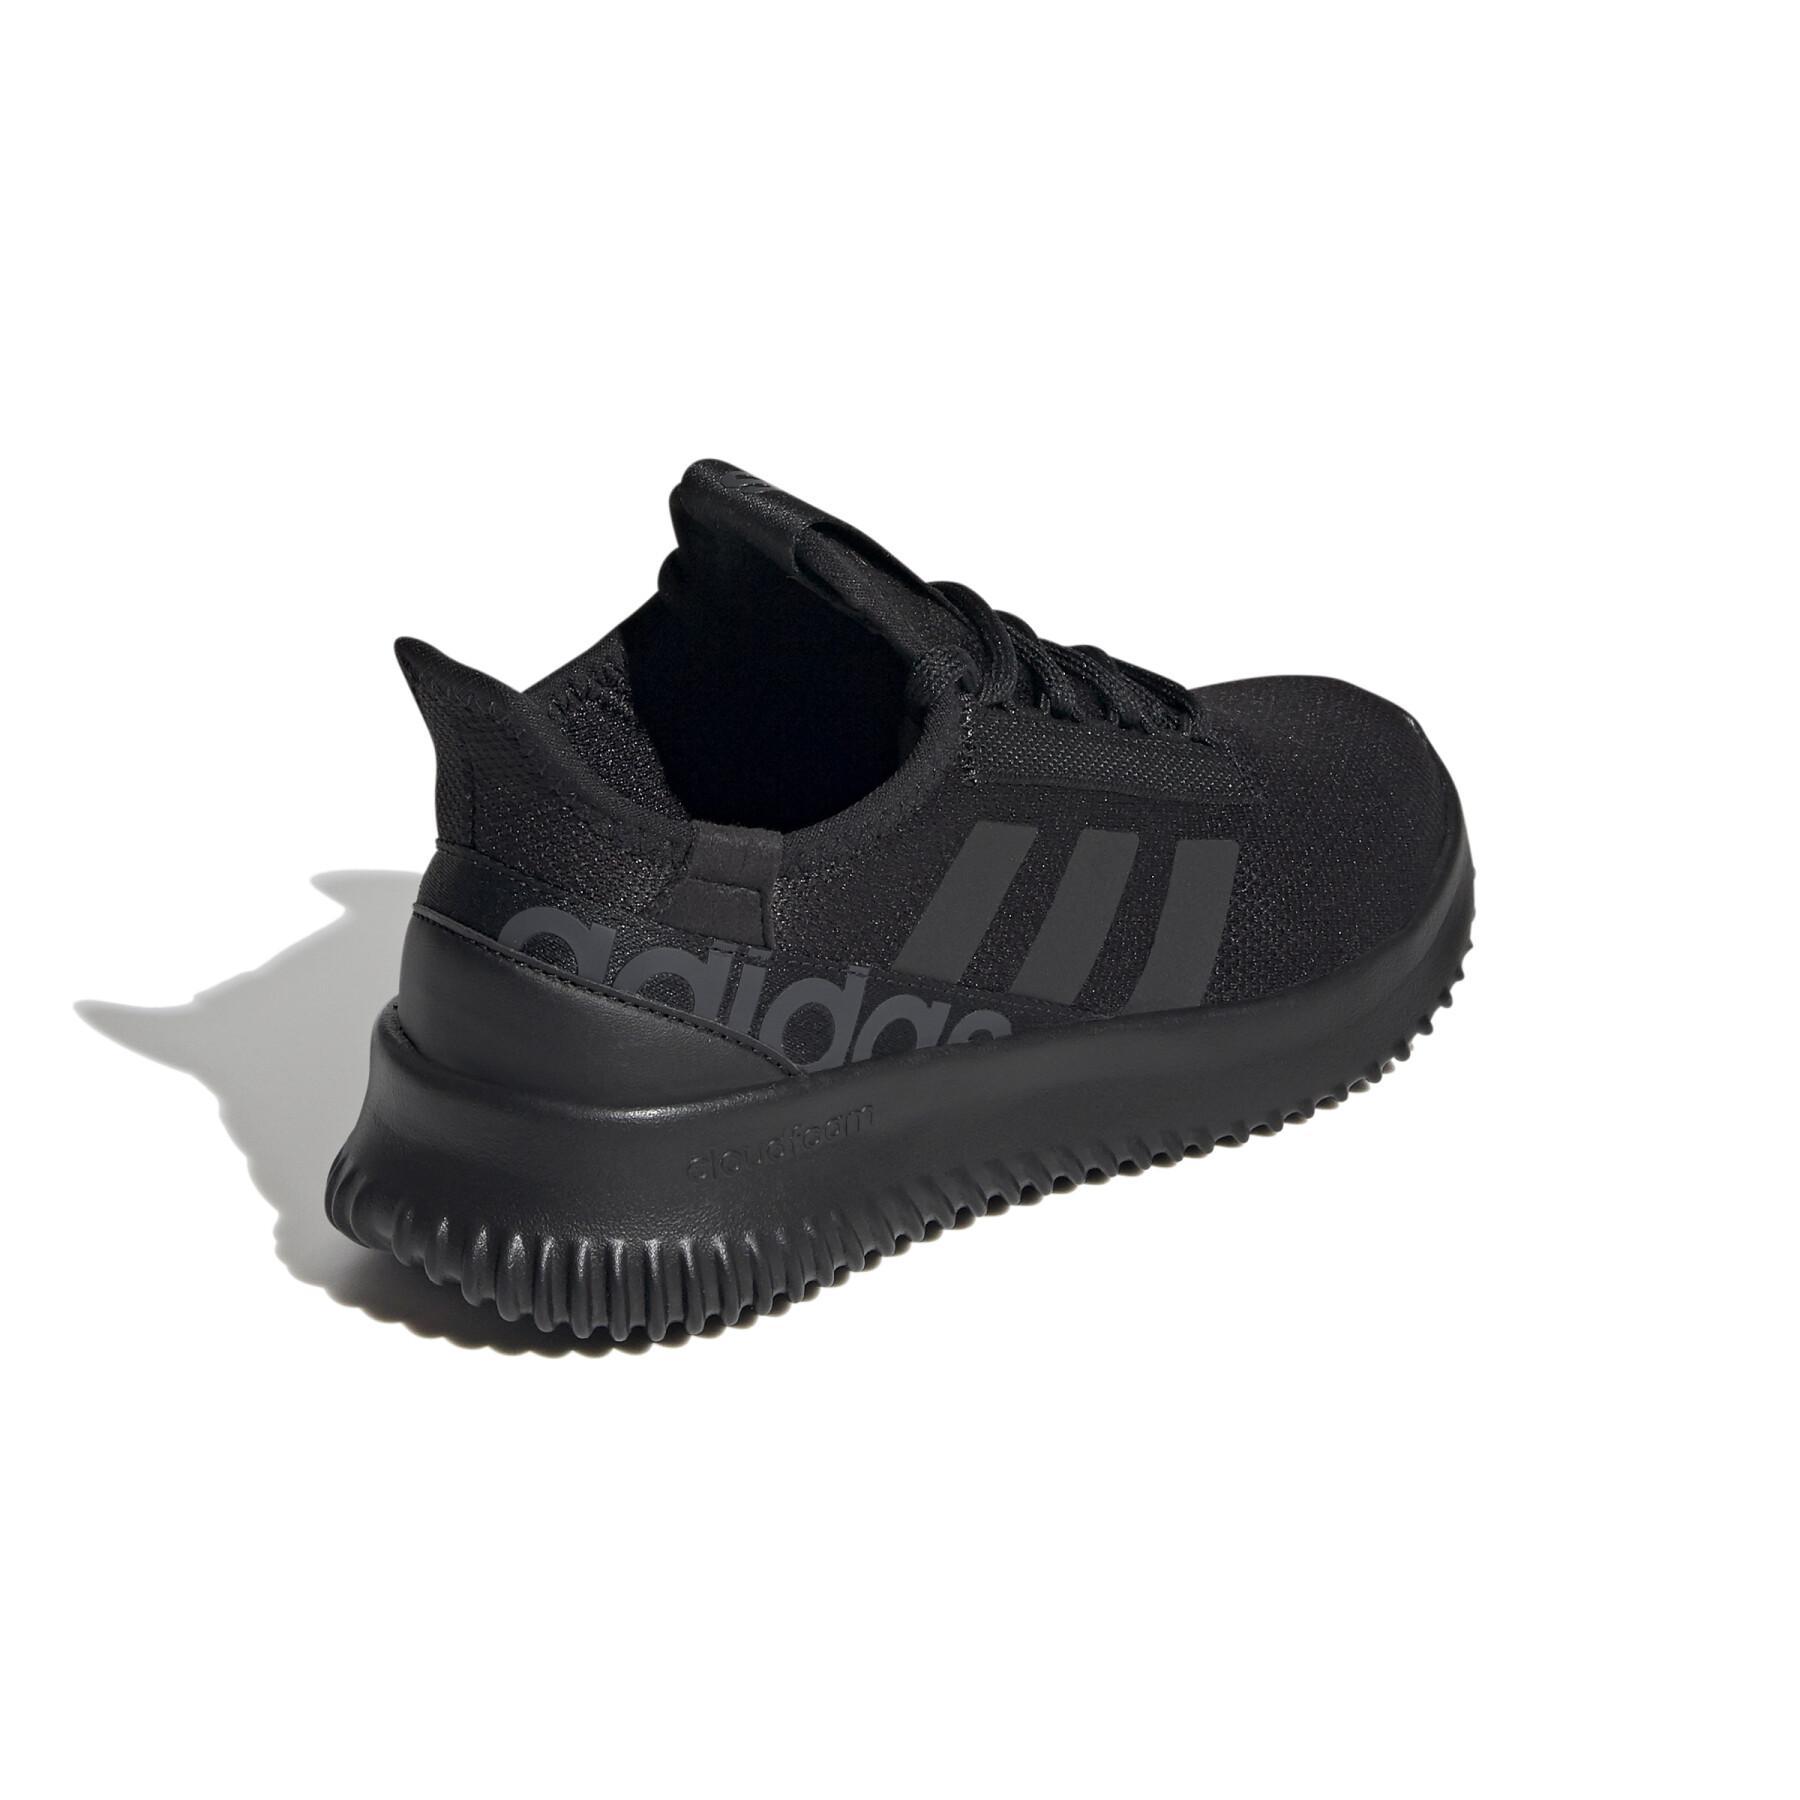 Children's running shoes adidas Kaptir 2.0